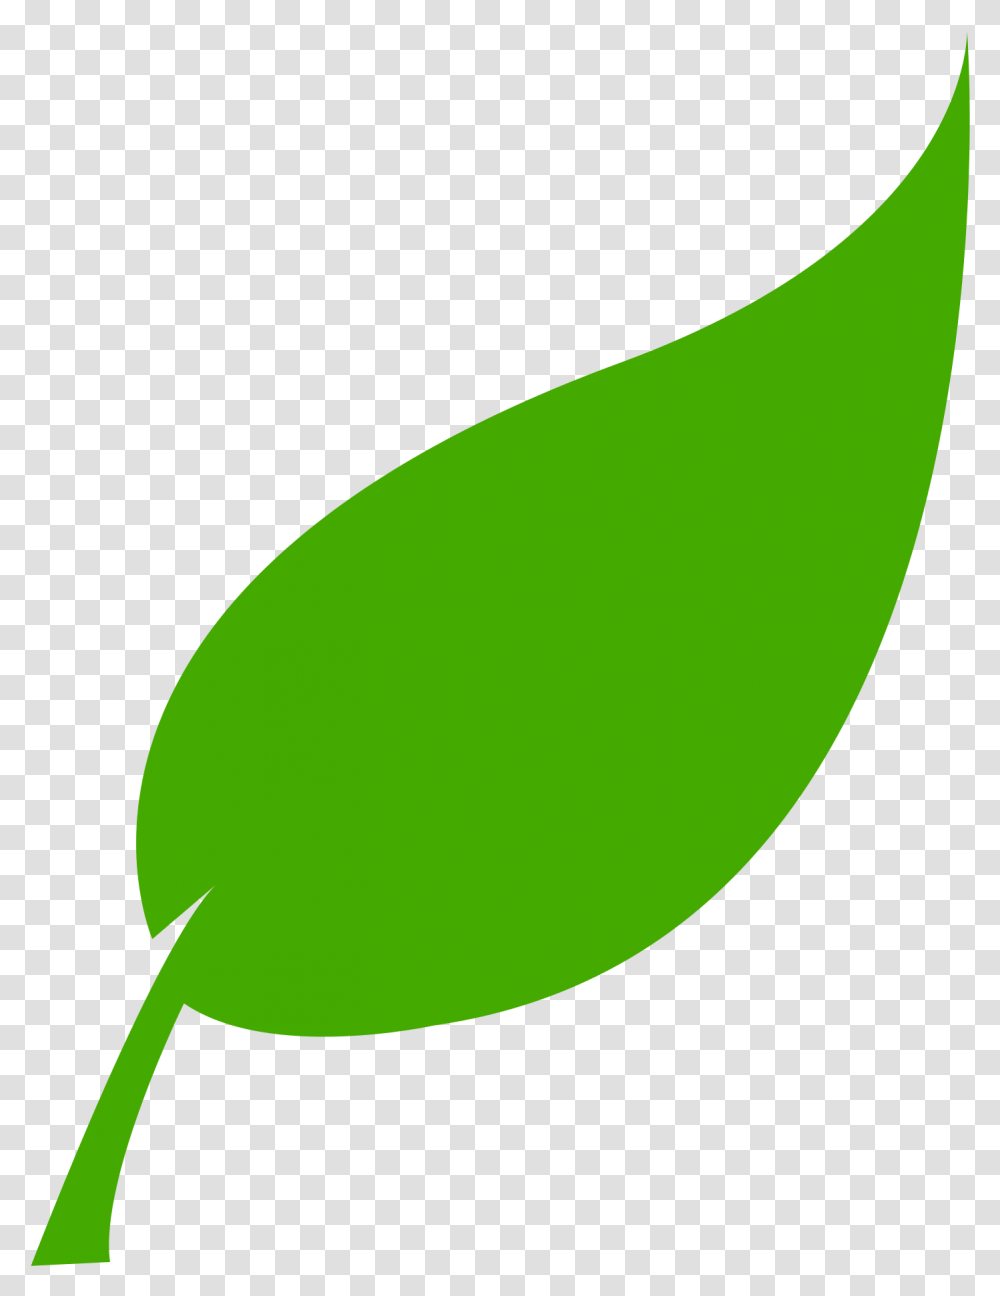 Green Energy Leaf Download Green Leaf, Plant, Food, Produce, Fruit Transparent Png